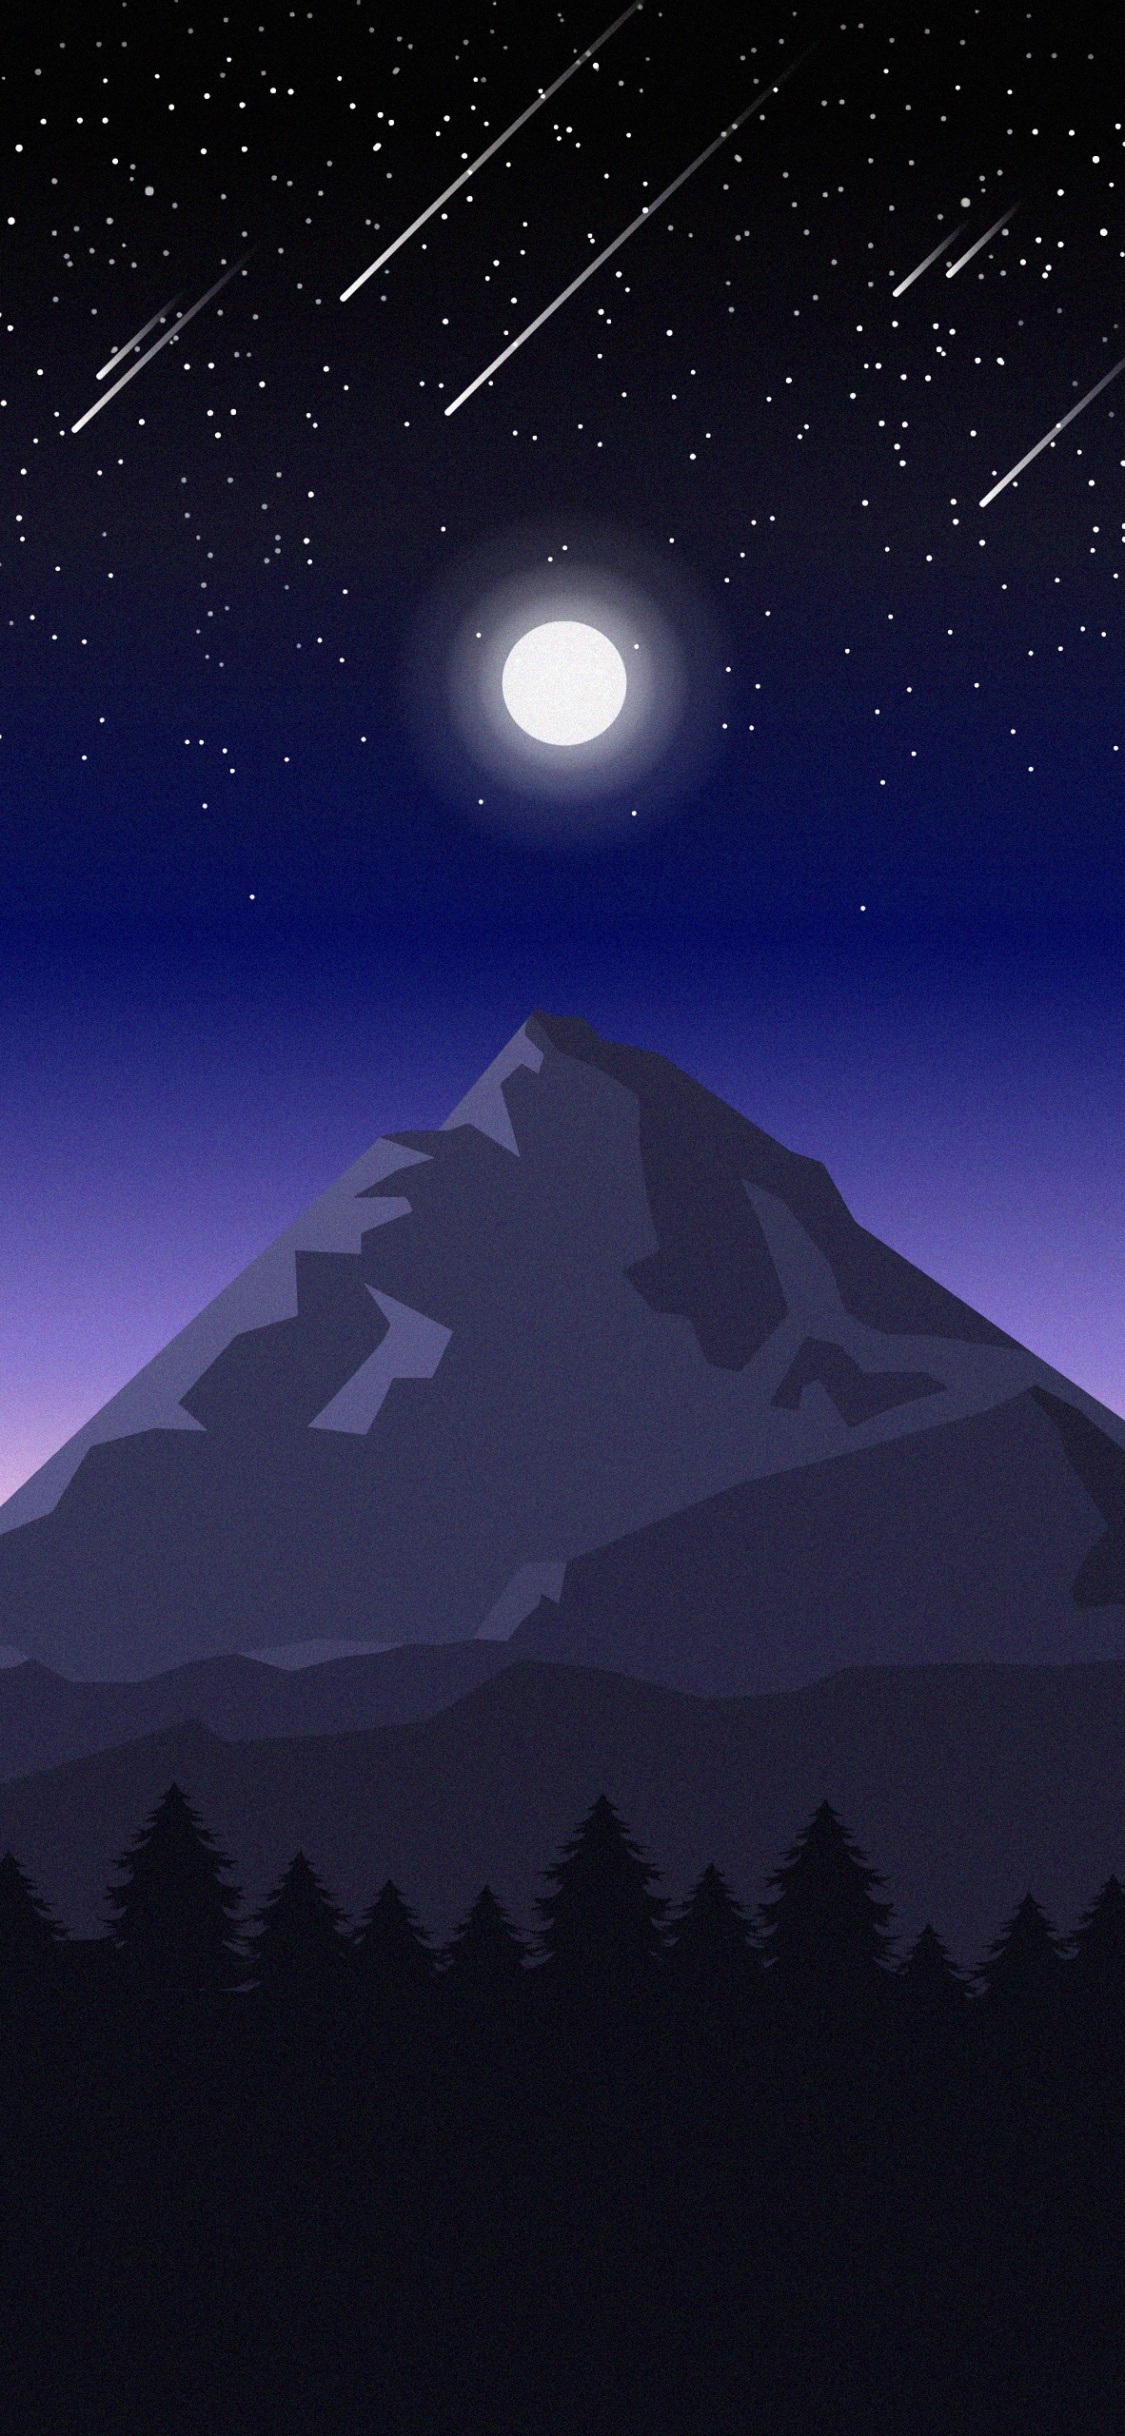 Bergigen Landschaftsformen, Licht, Himmlisches Ereignis, Nacht, Astronomisches Objekt. Wallpaper in 1125x2436 Resolution